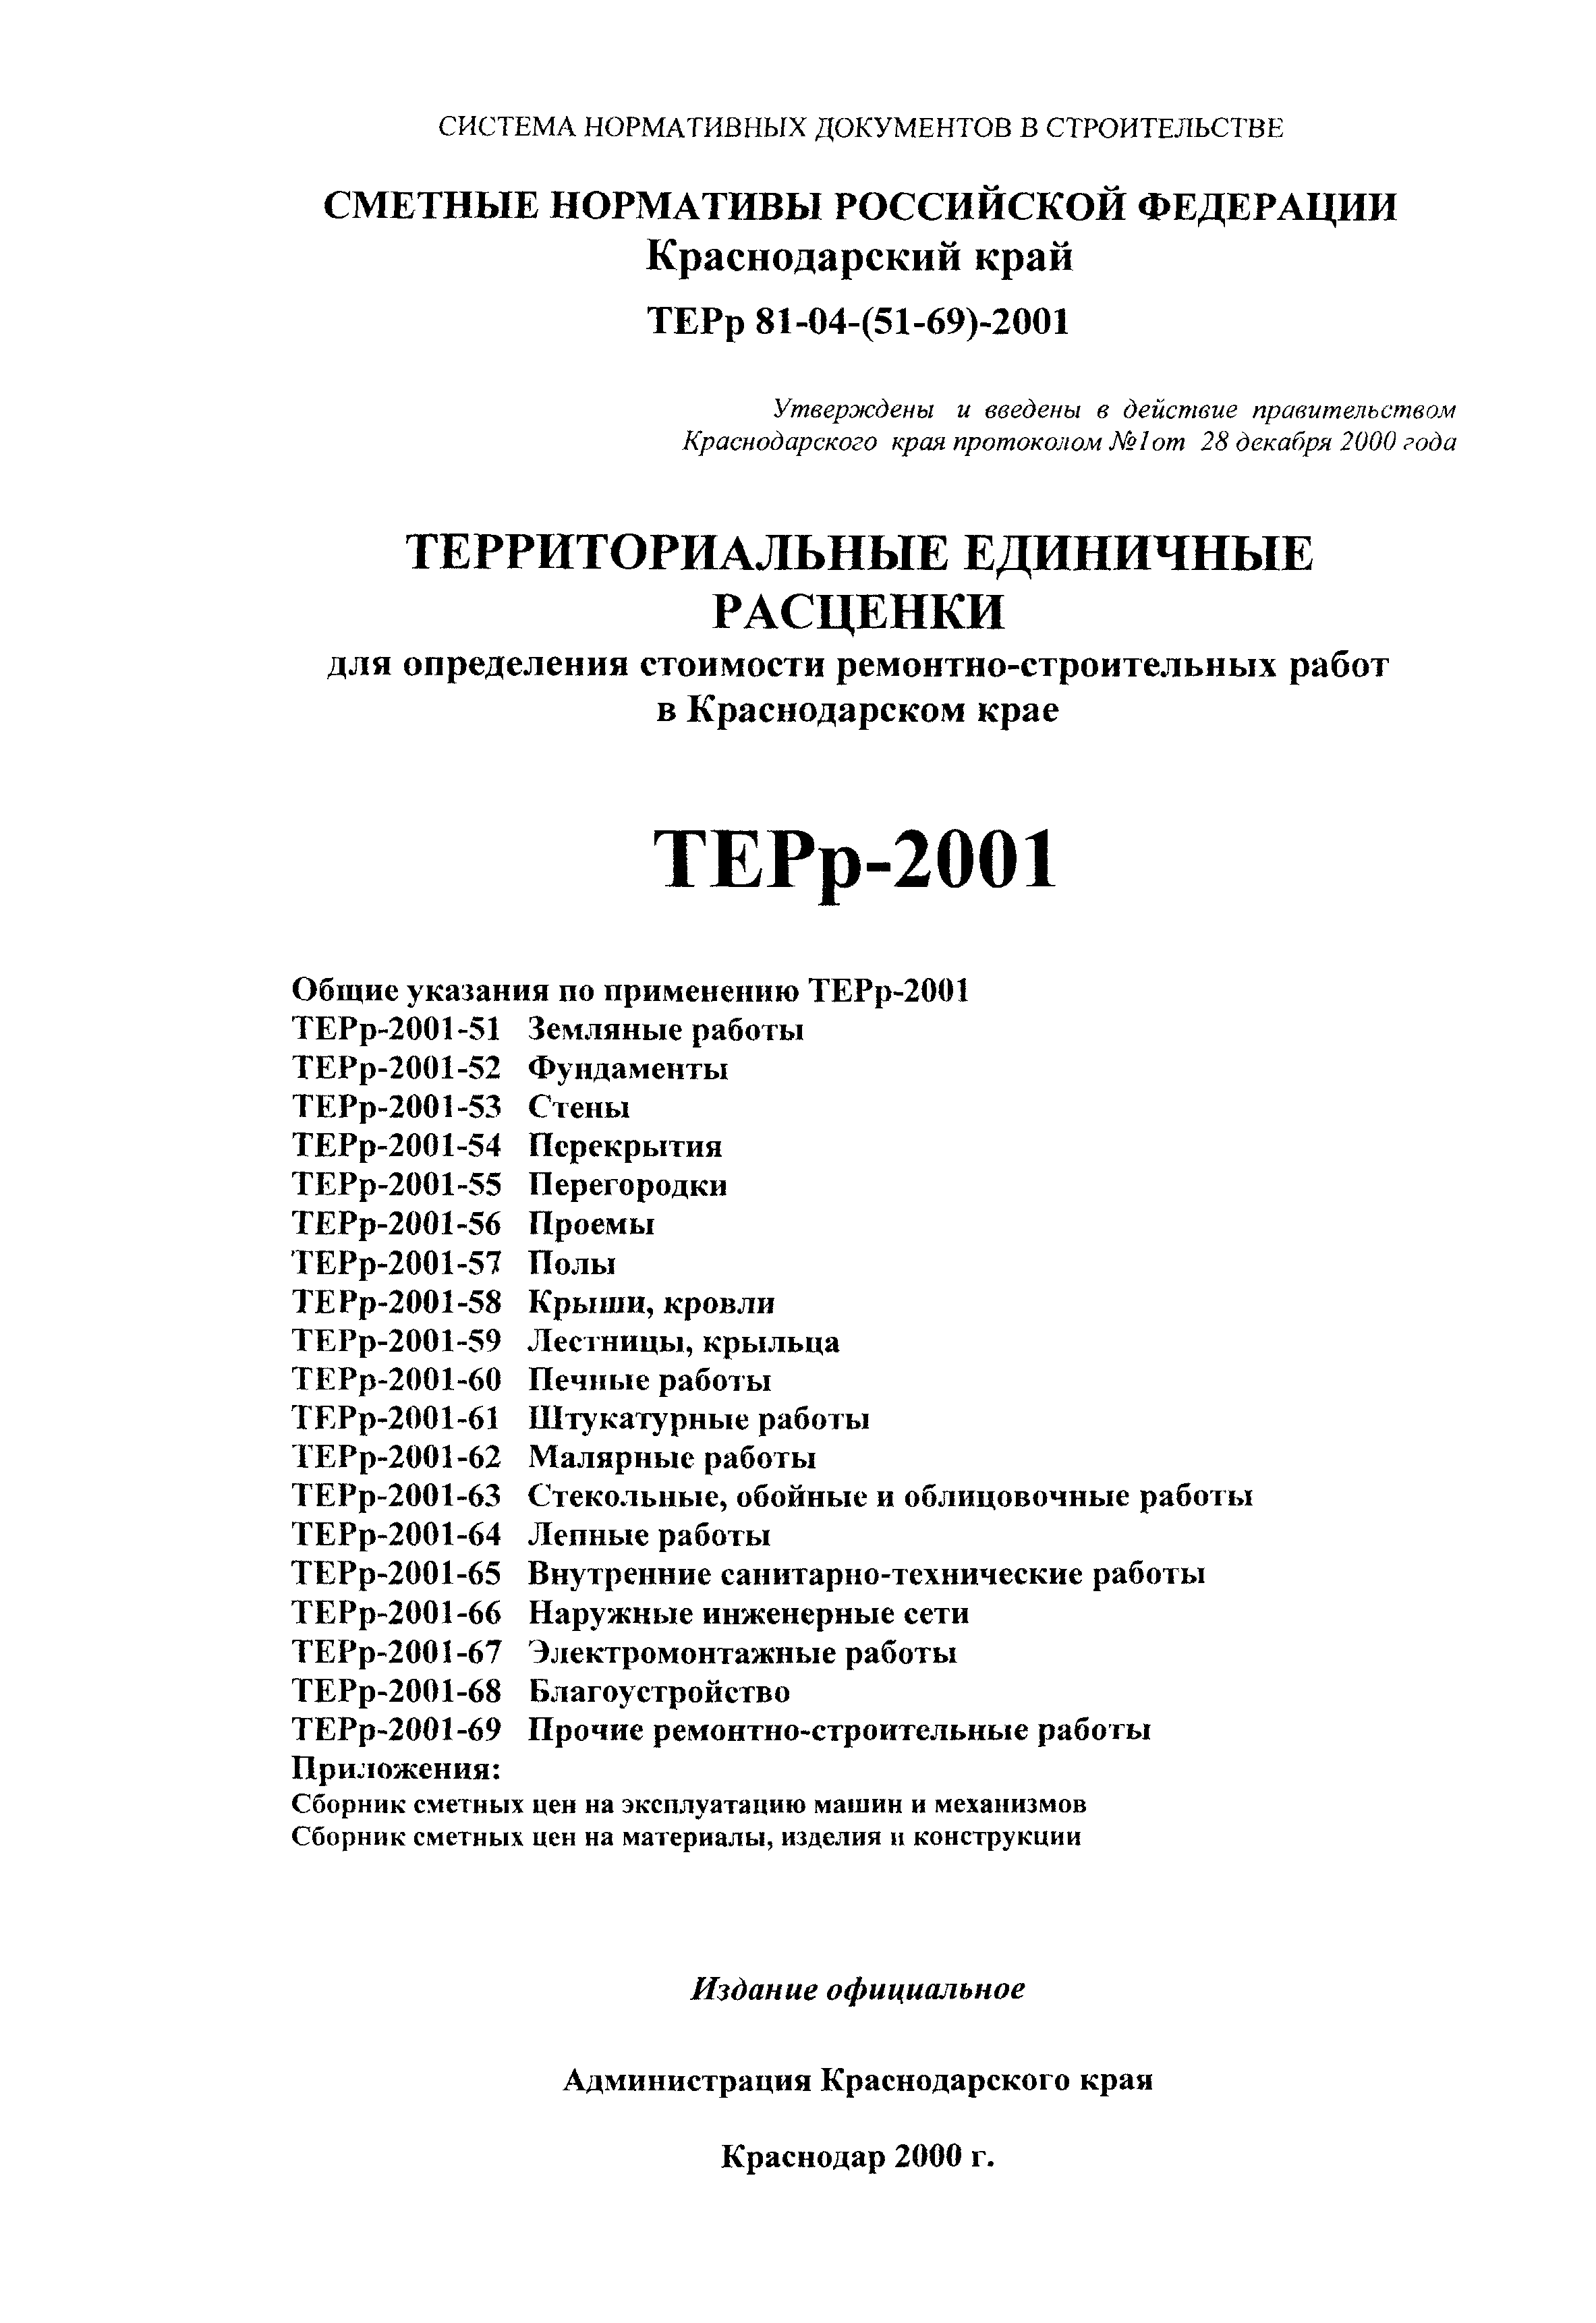 ТЕРр Краснодарского края 2001-61